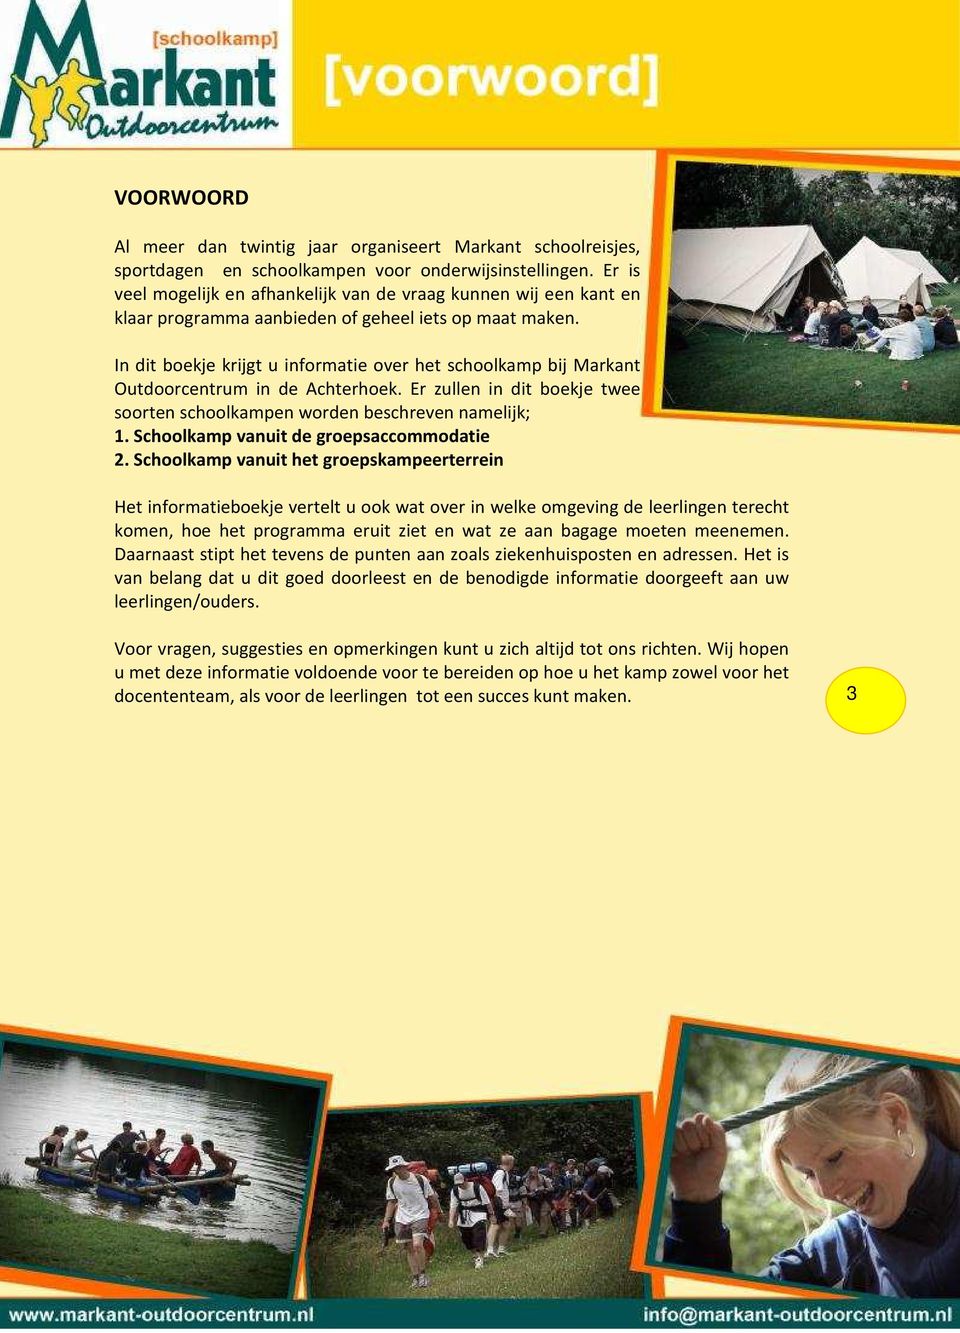 In dit boekje krijgt u informatie over het schoolkamp bij Markant Outdoorcentrum in de Achterhoek. Er zullen in dit boekje twee soorten schoolkampen worden beschreven namelijk; 1.